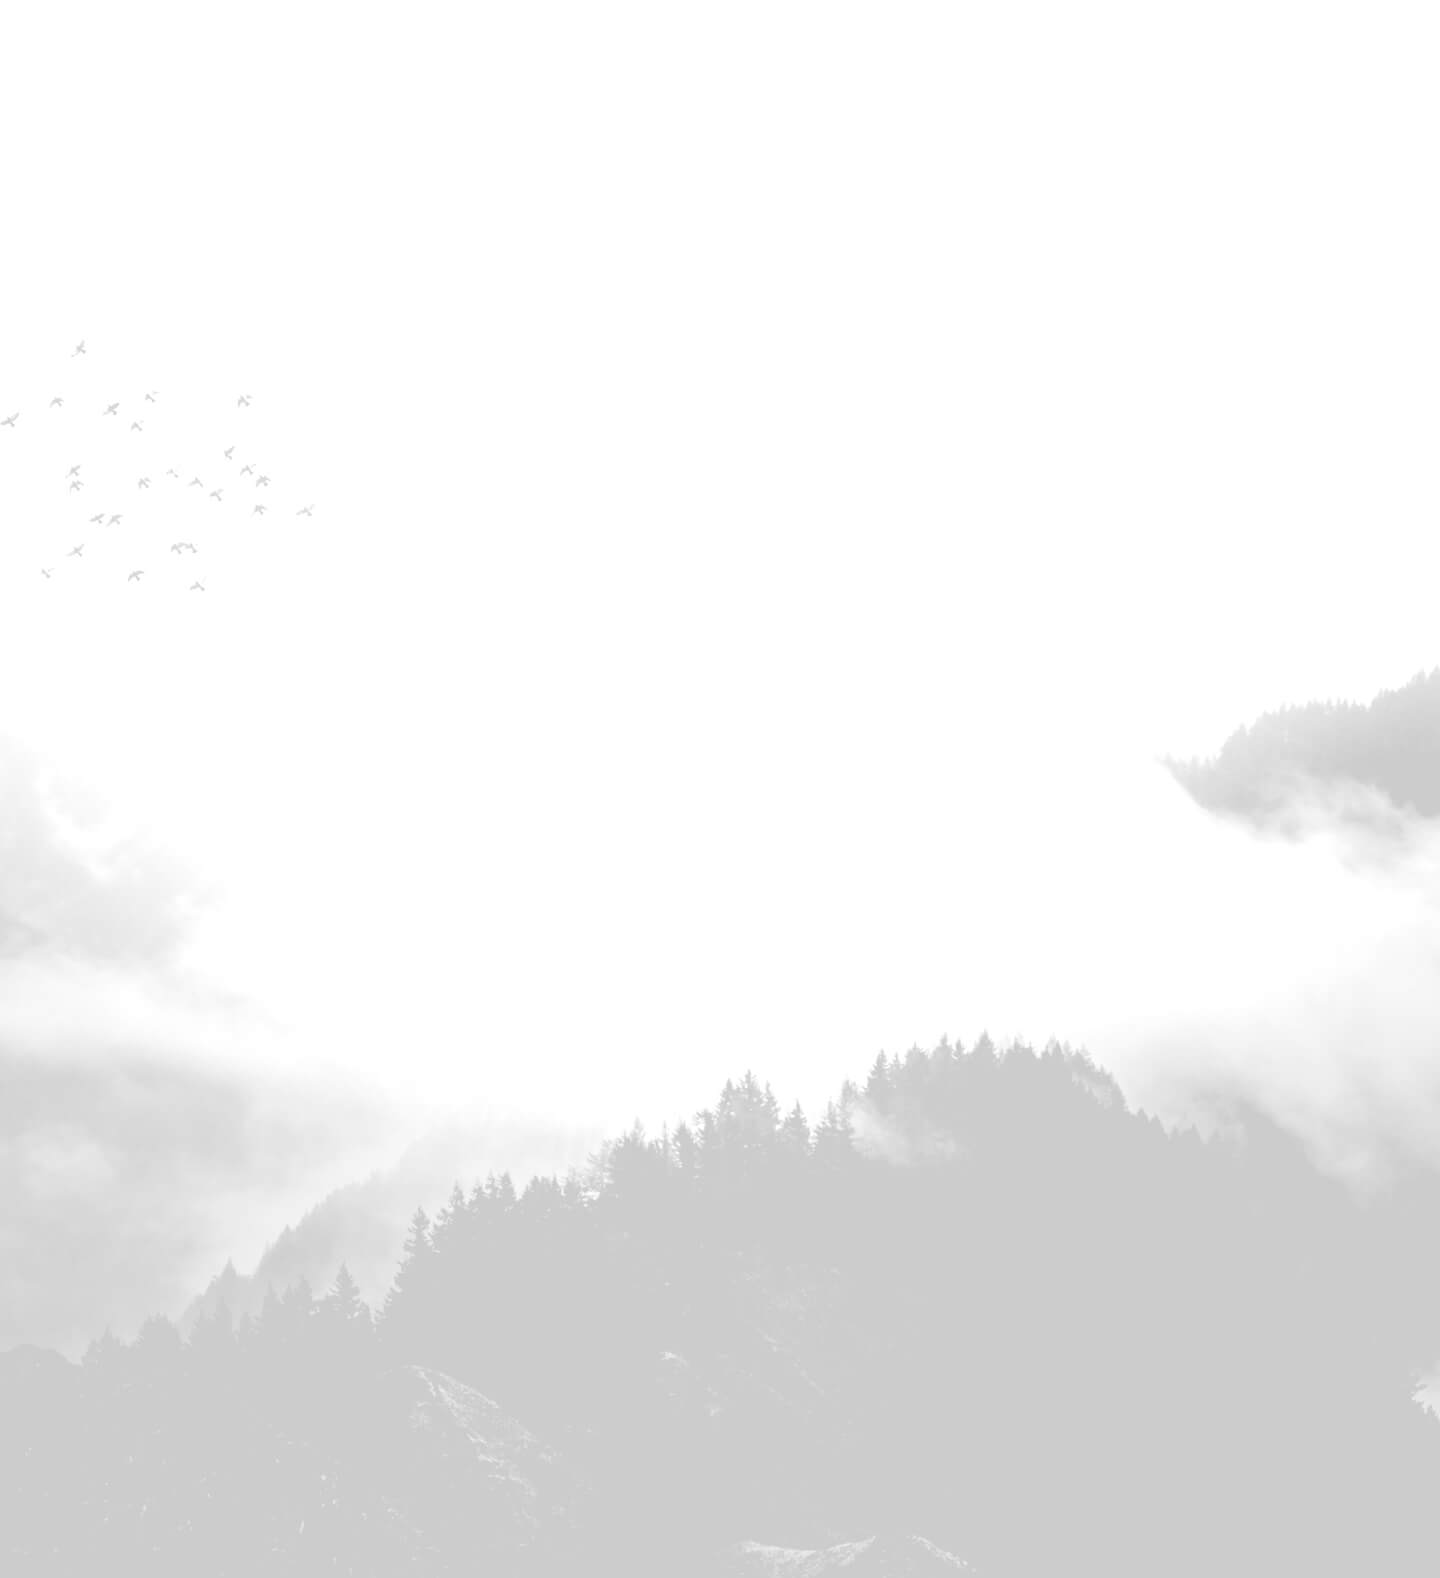 Misty mountain background image